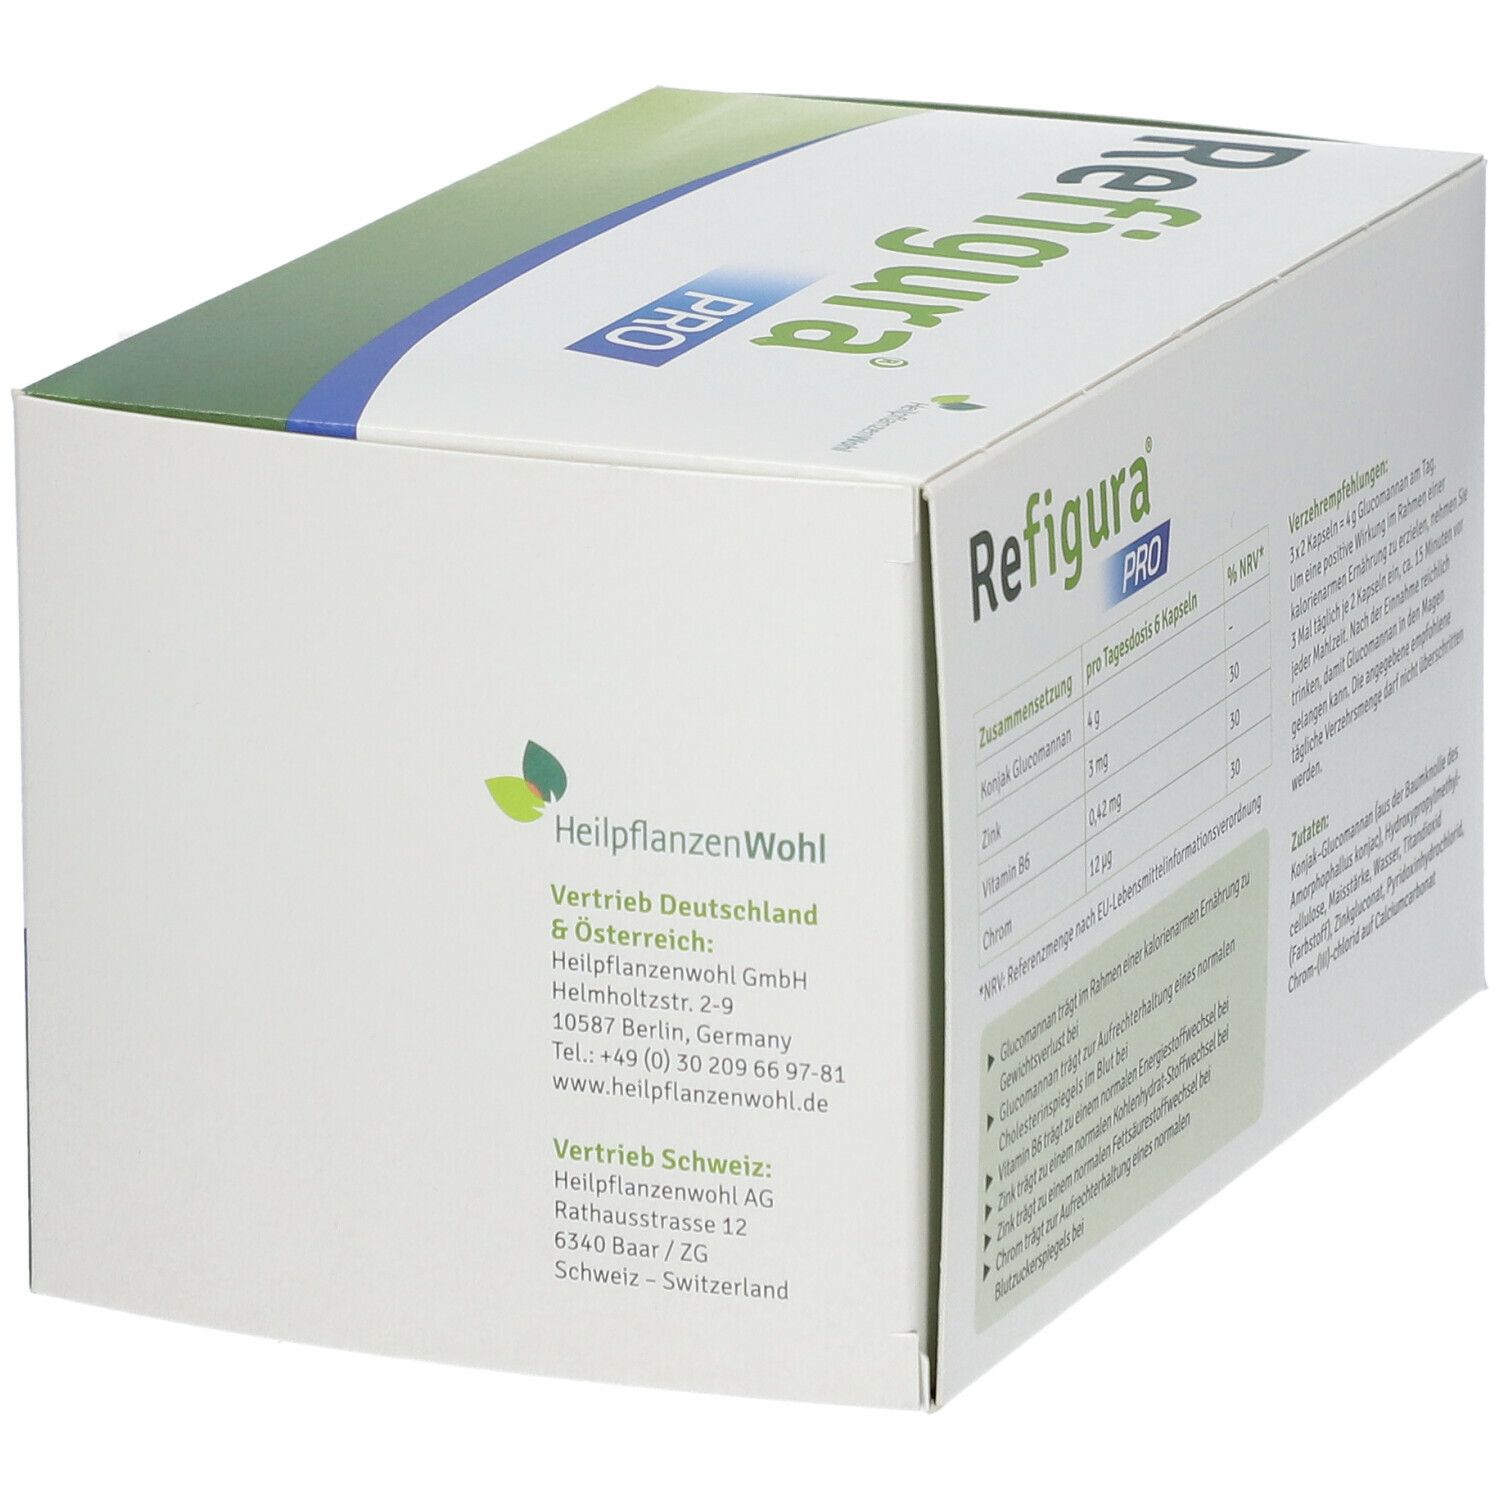 REFIGURA® Pro Kapseln für einen aktiven Stoffwechsel vegan